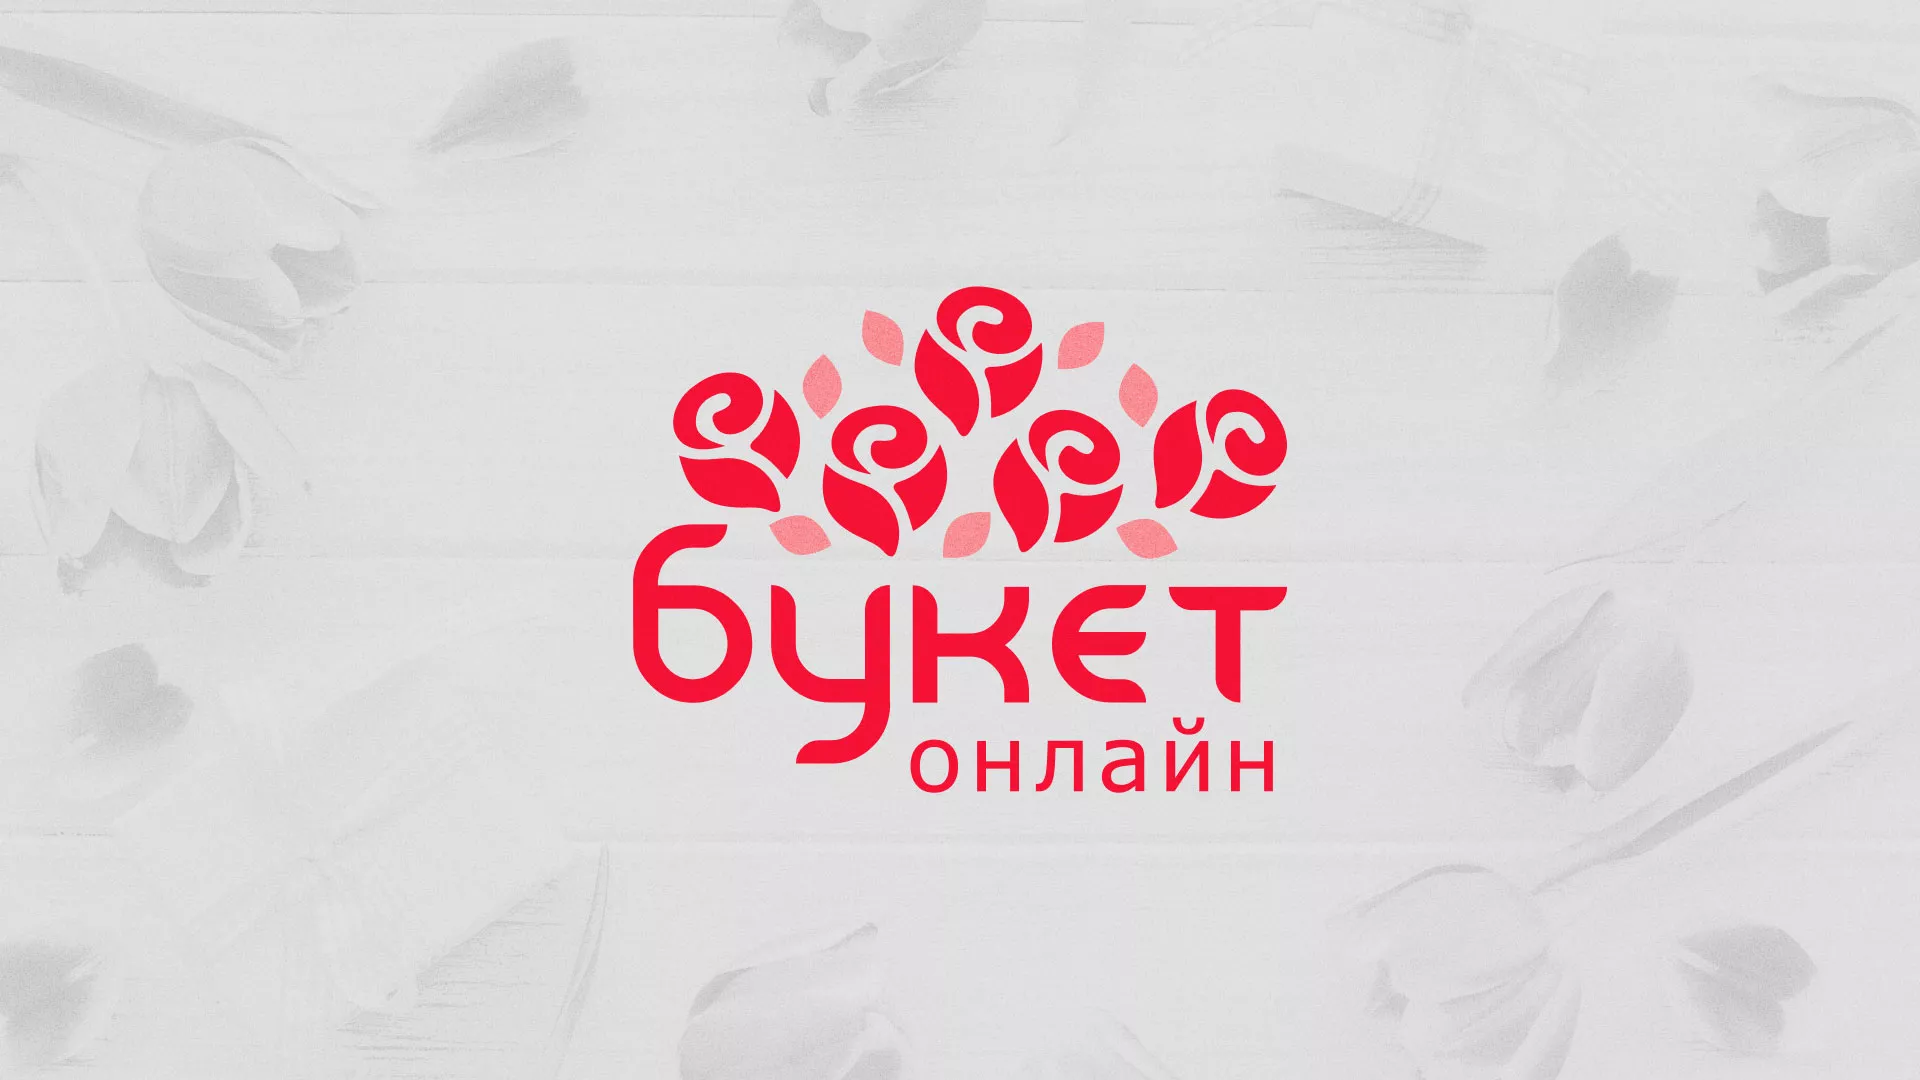 Создание интернет-магазина «Букет-онлайн» по цветам в Красногорске